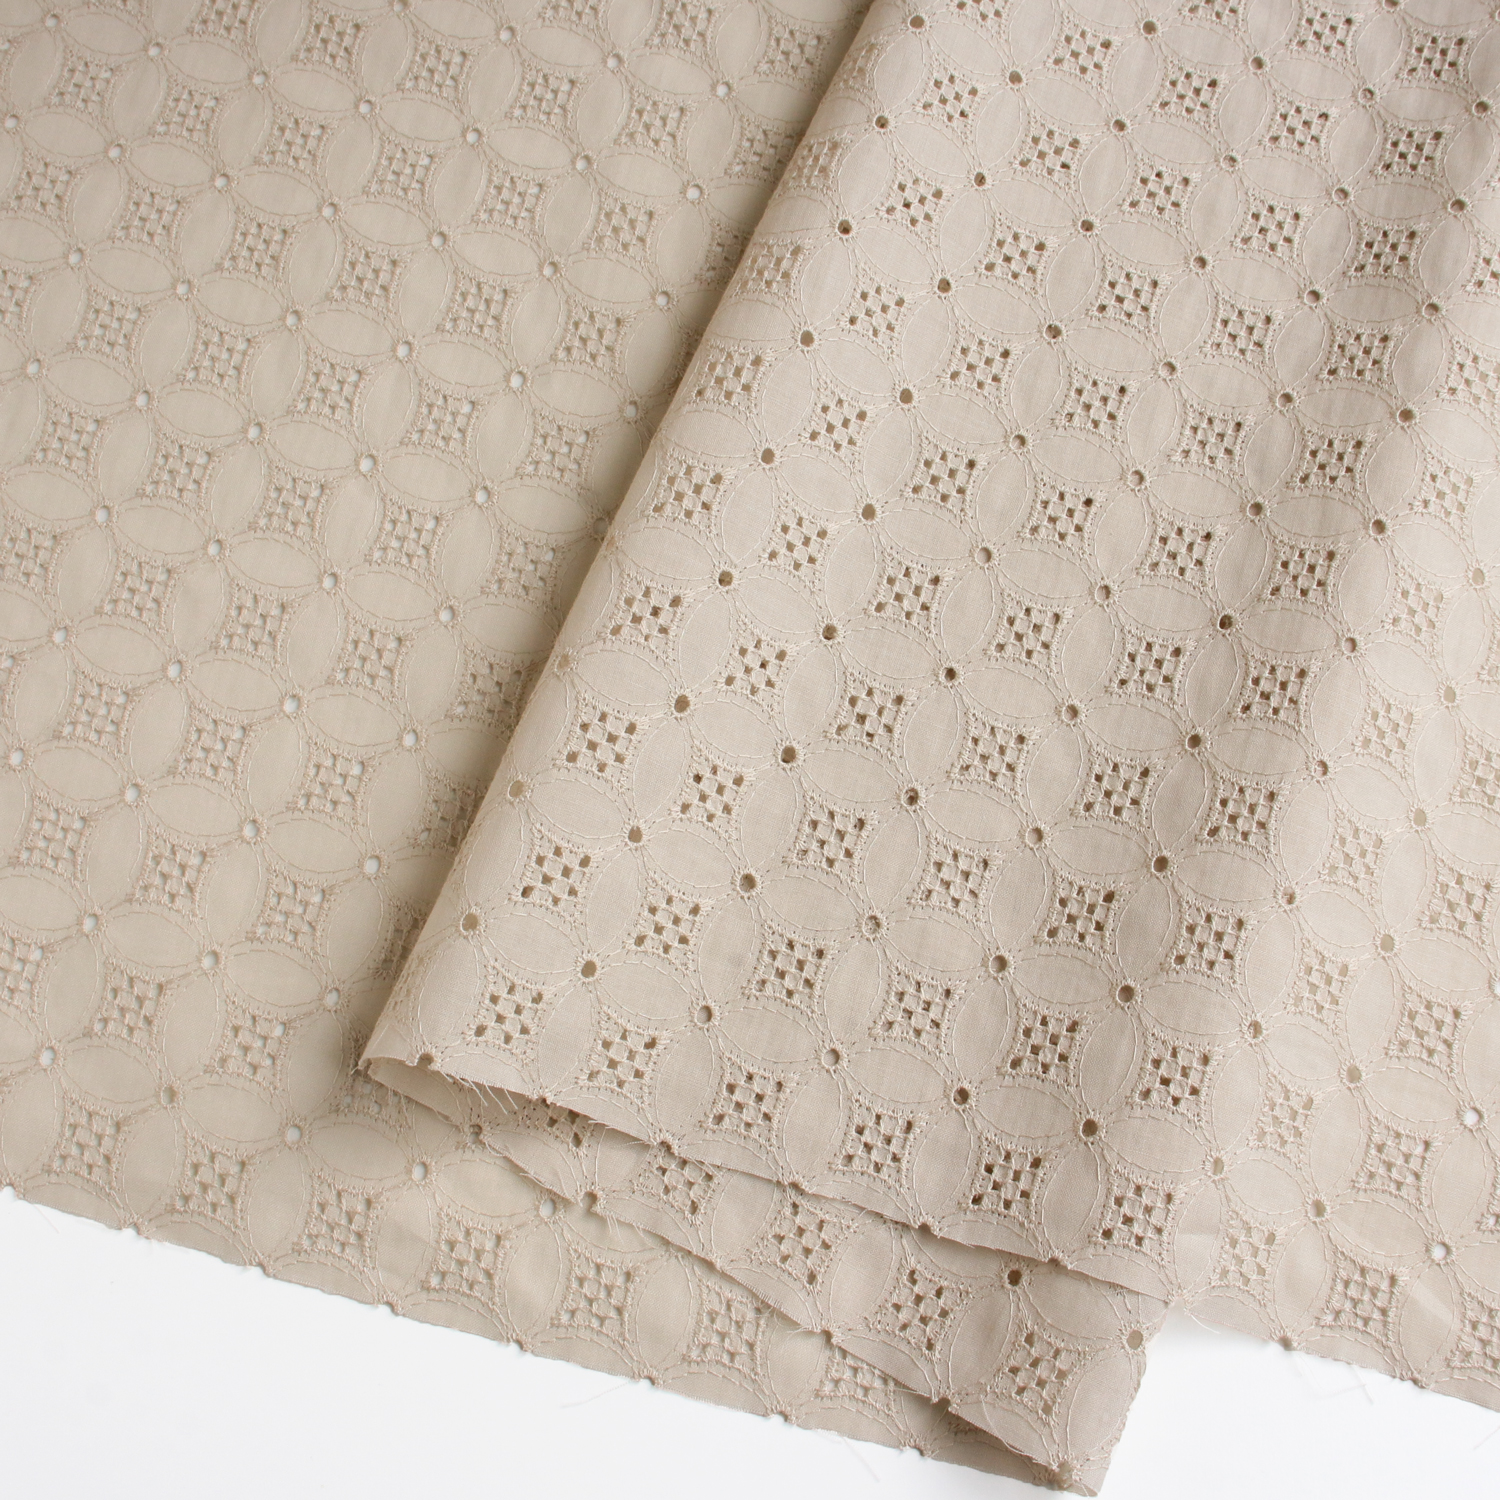 AL692-81 cotton lace fabric, Width 100cm, 1m/unit (m)